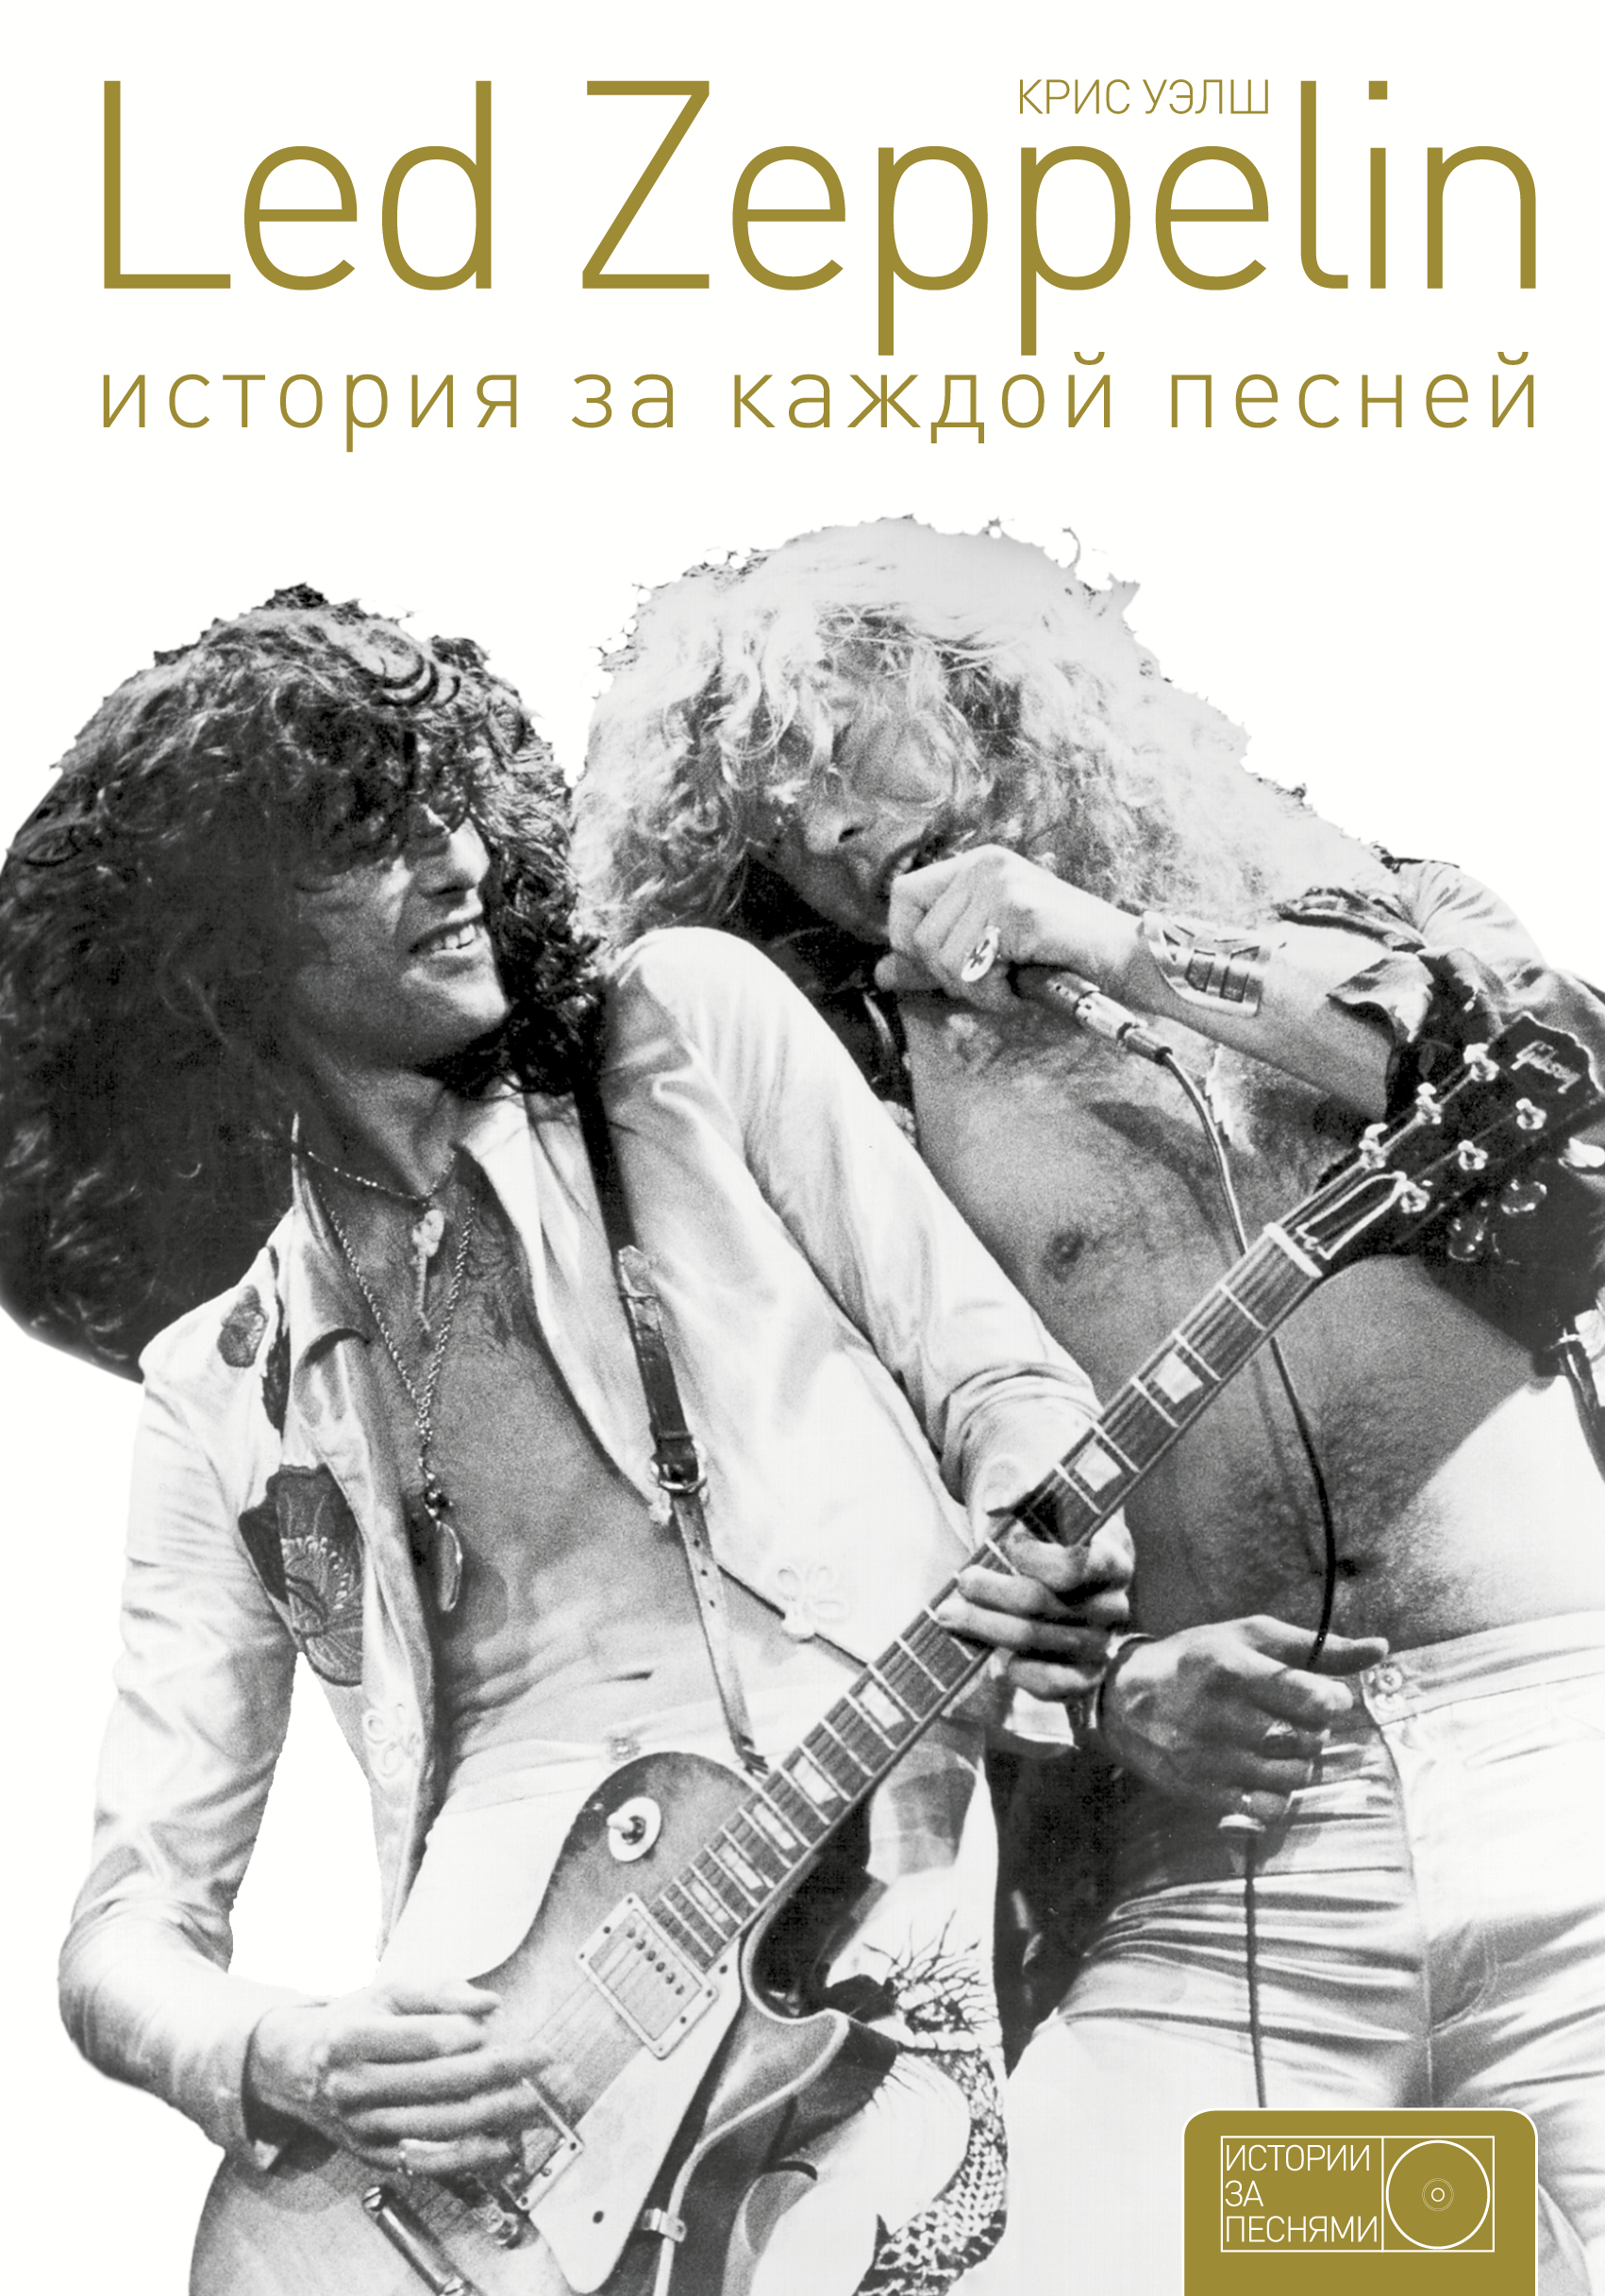 Книга Led Zeppelin. История за каждой песней из серии , созданная Крис Уэлш, может относится к жанру Зарубежная публицистика, Музыка, балет, Биографии и Мемуары. Стоимость электронной книги Led Zeppelin. История за каждой песней с идентификатором 50404216 составляет 399.00 руб.